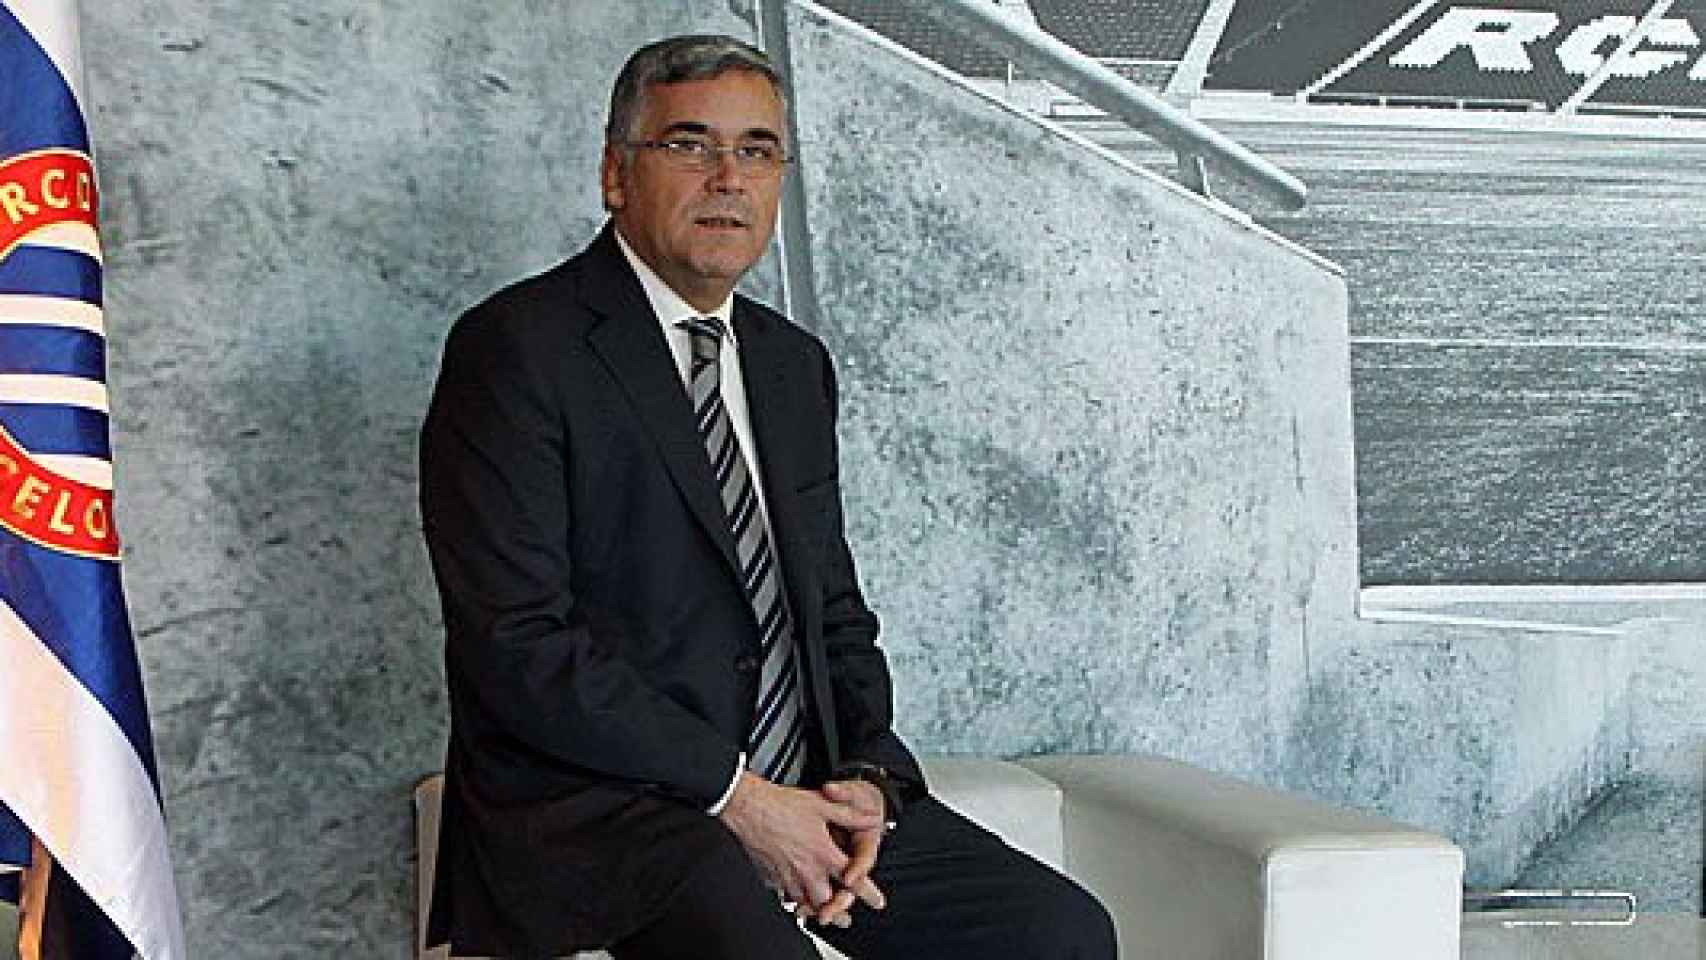 El presidente del R.C.D. Espanyol, Joan Collet